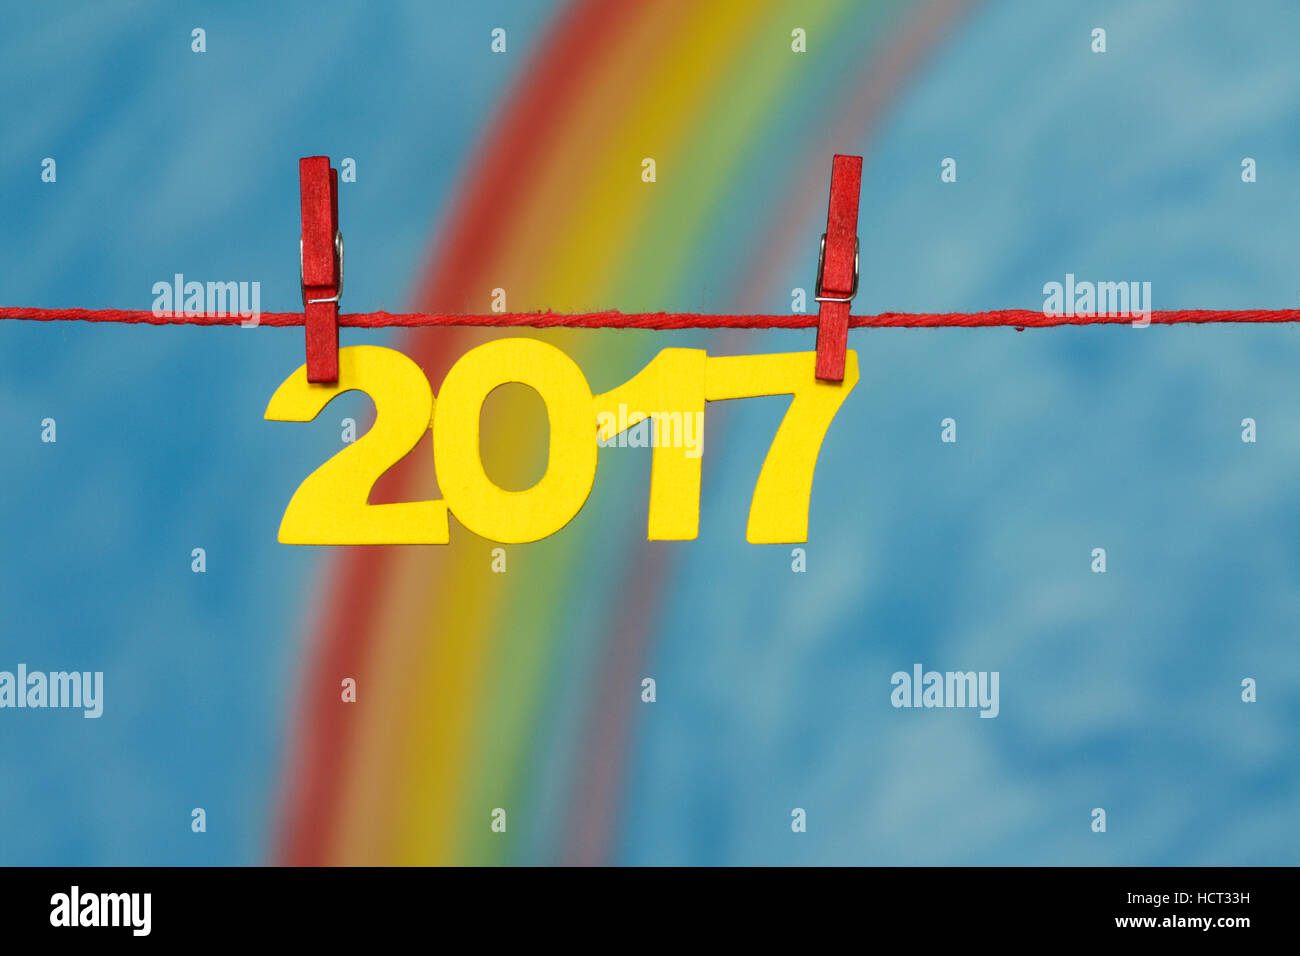 La veille du Nouvel An 2017 avec les numéros un arc-en-ciel de couleurs et fond de ciel bleu illustrant le concept de nouveaux débuts. Banque D'Images